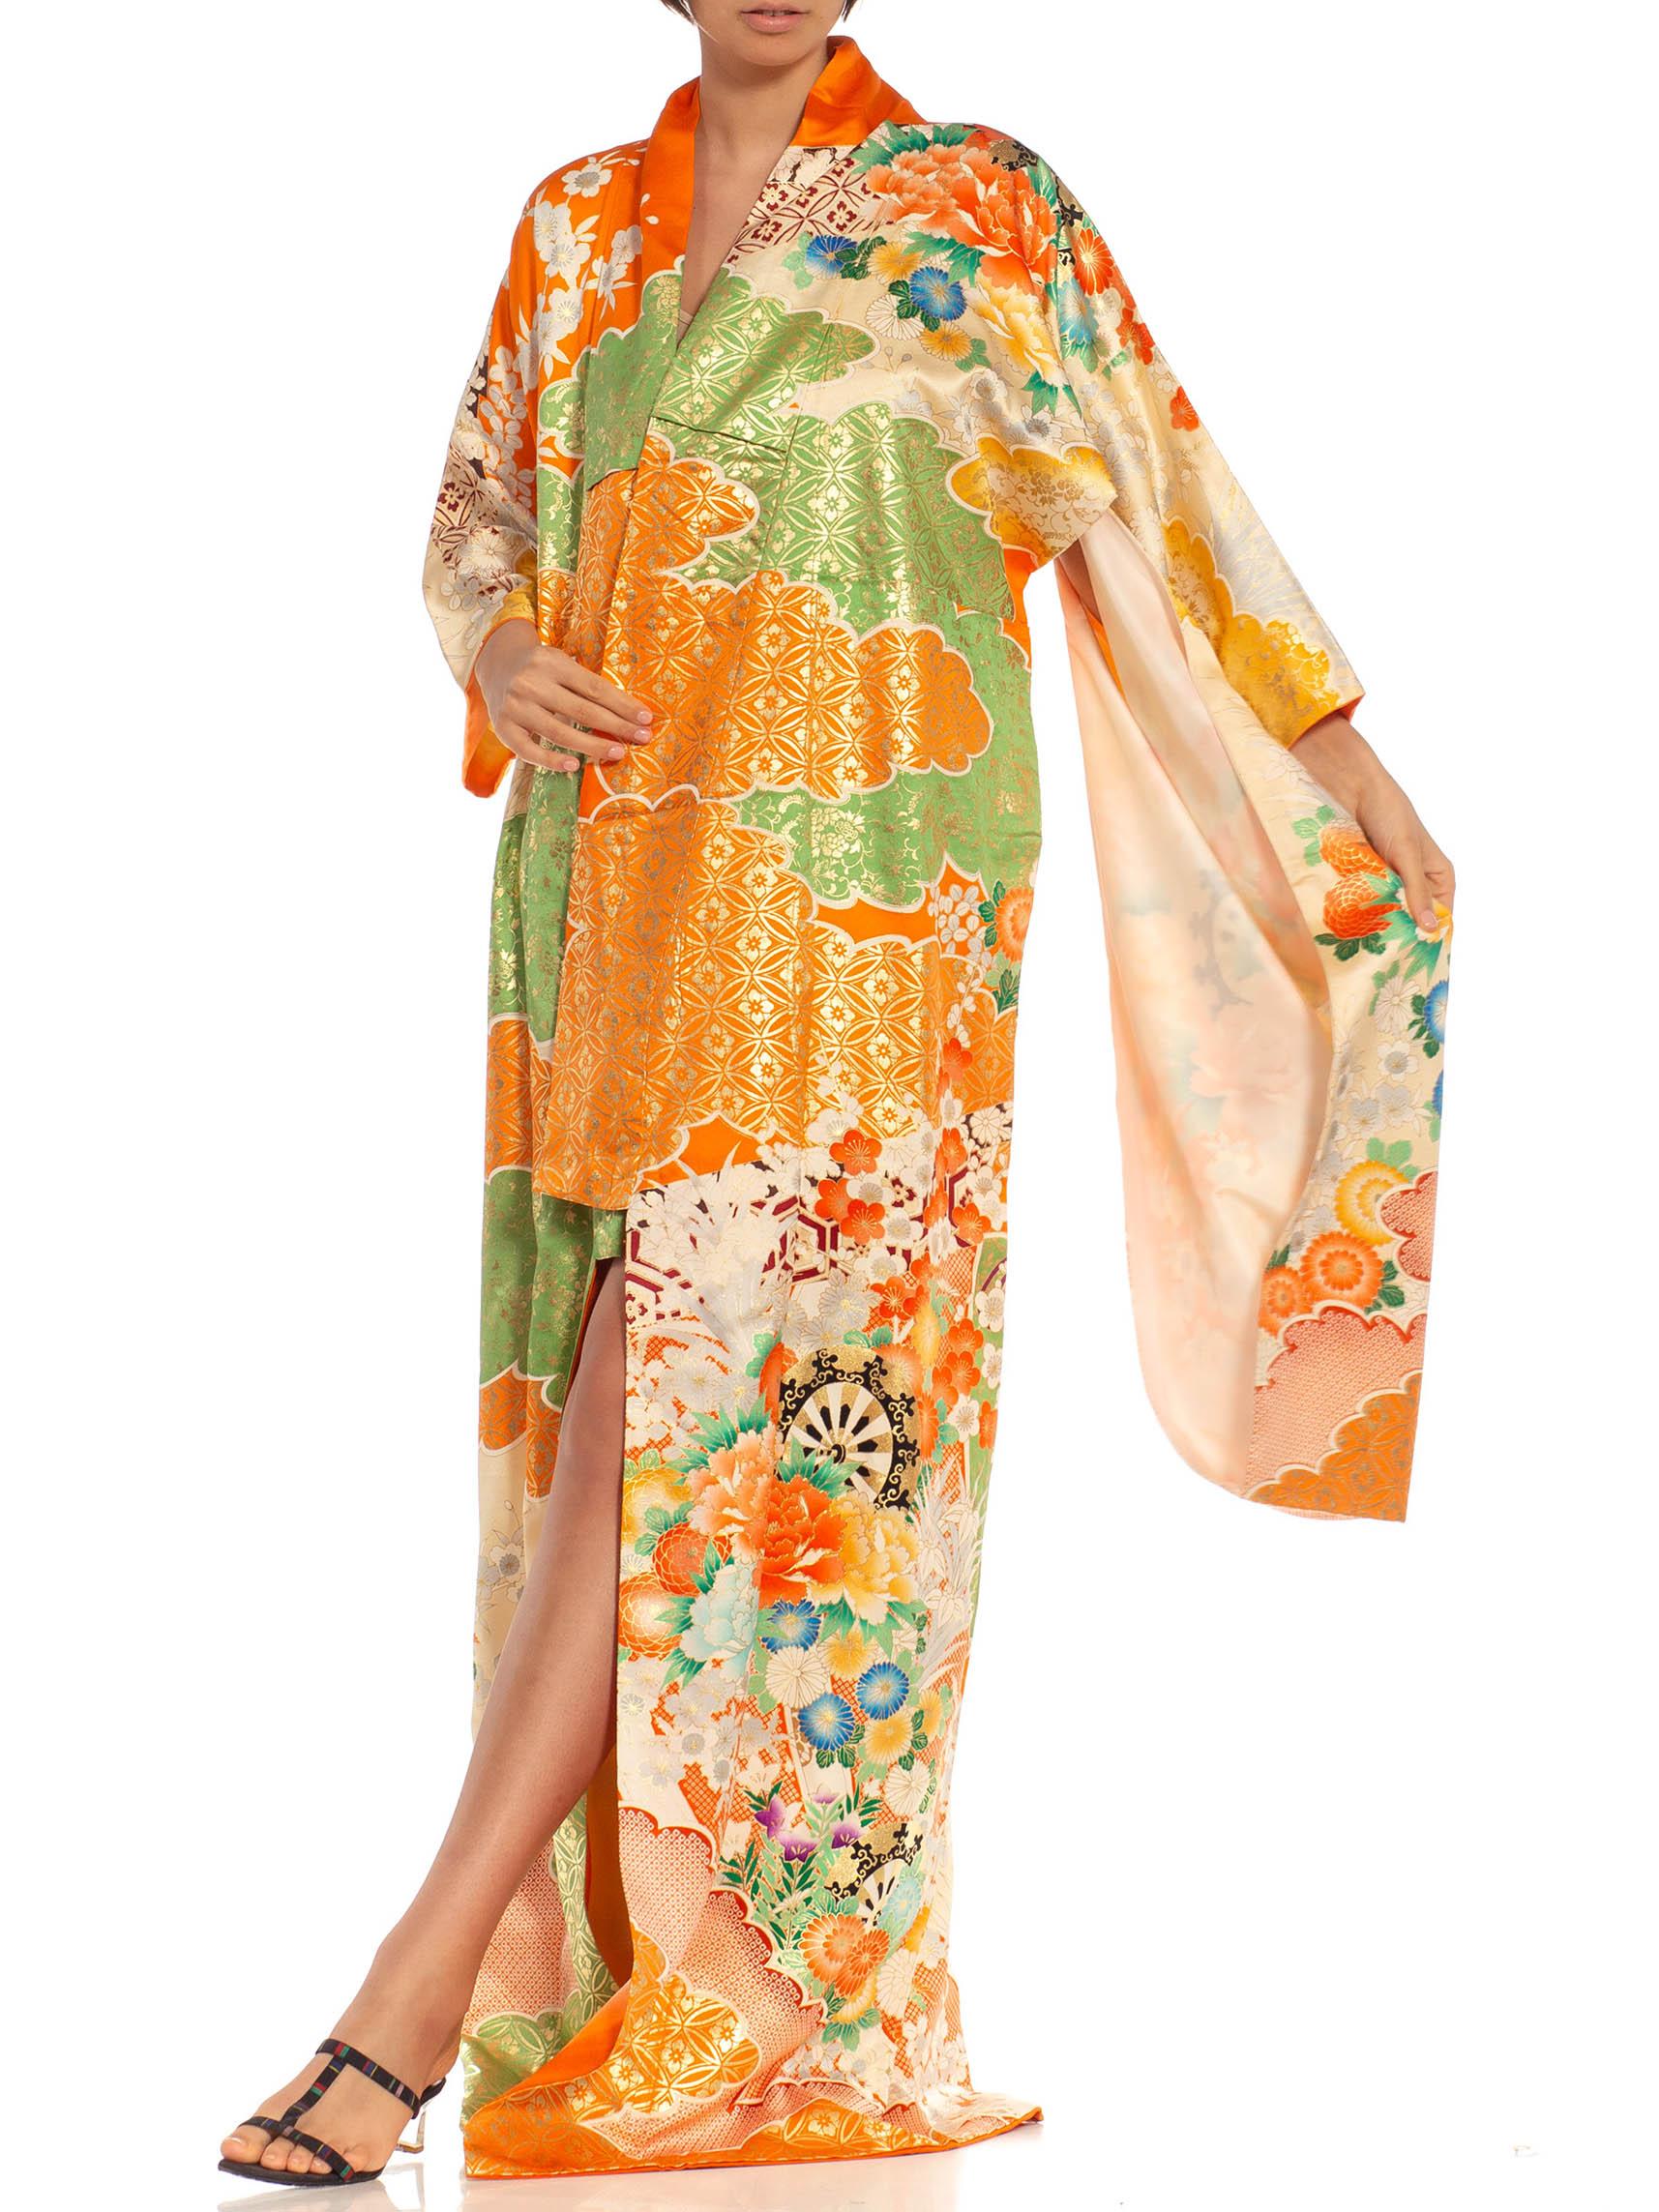 Orange, Green & Metallic Gold Floral Silk Kimono For Sale 1